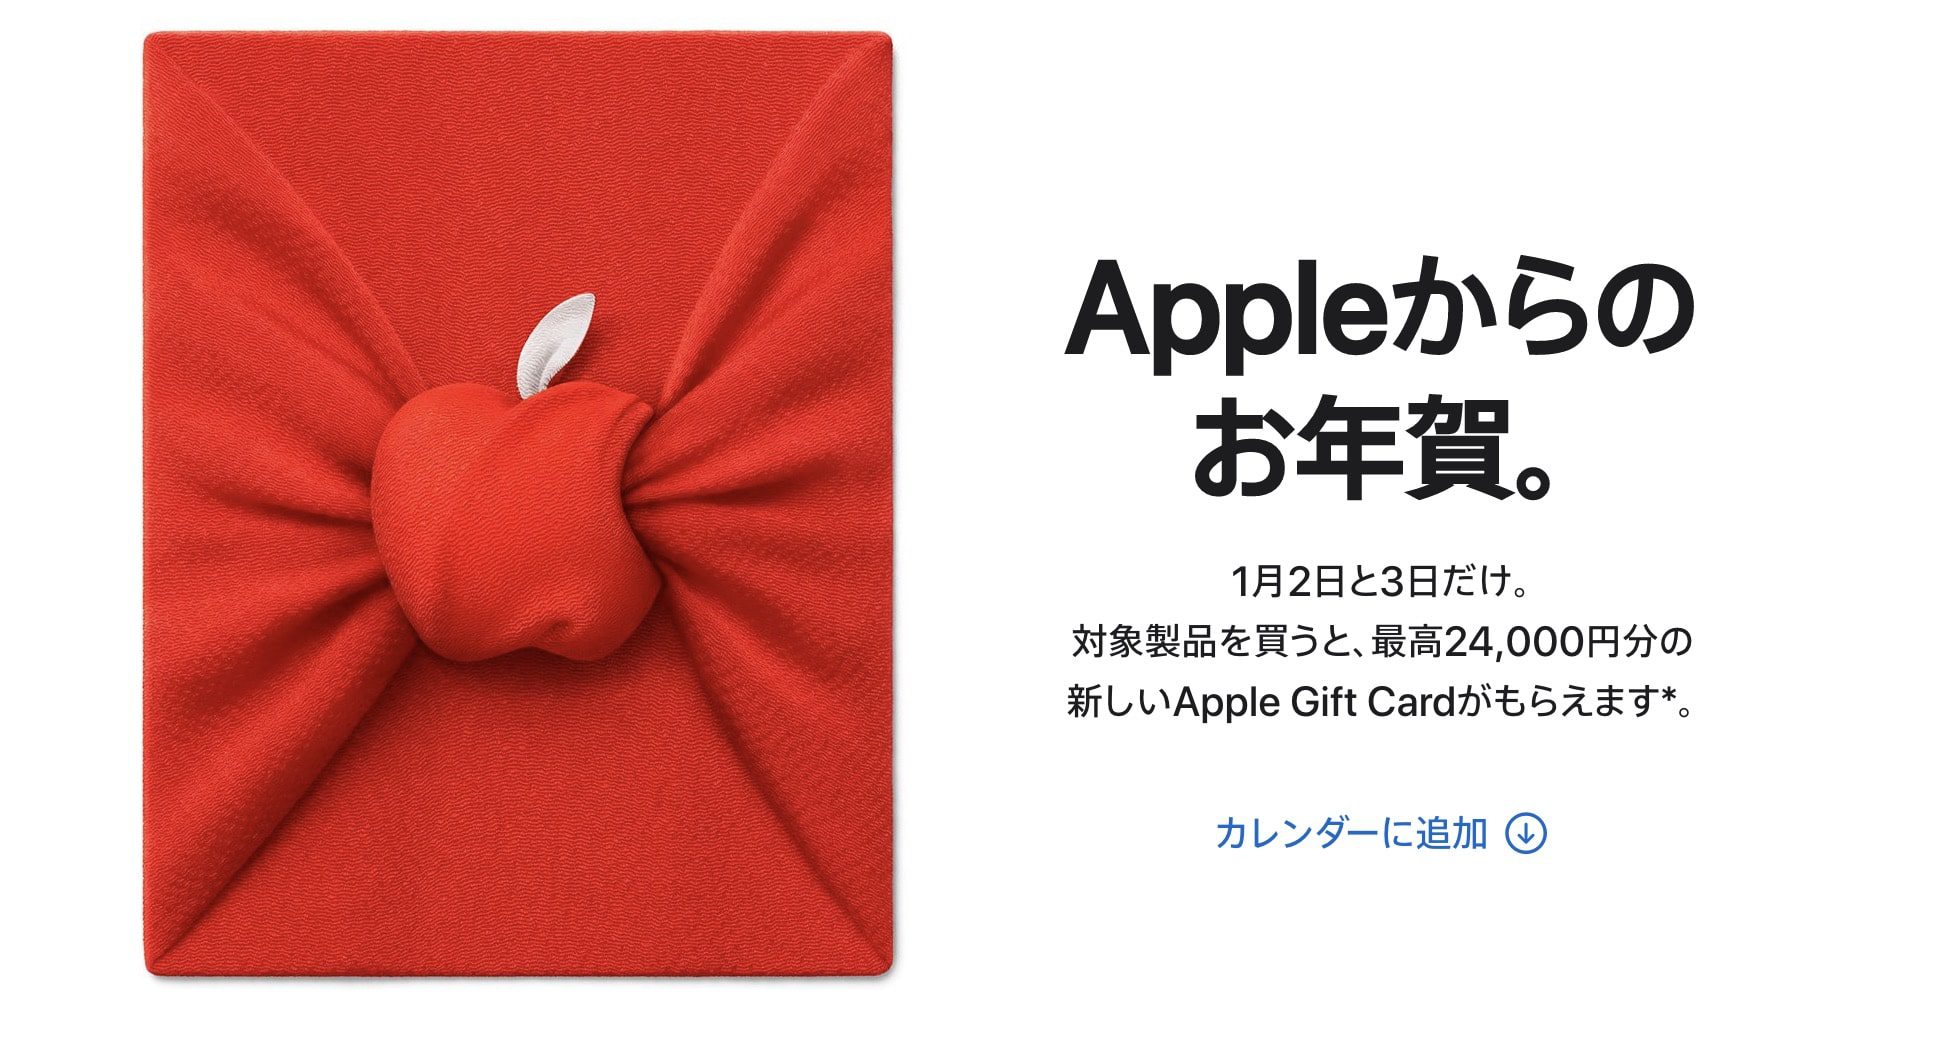 Apple Angebot einer Geschenkkarte, Limited Edition AirTag für die japanische Neujahrsaktion 1